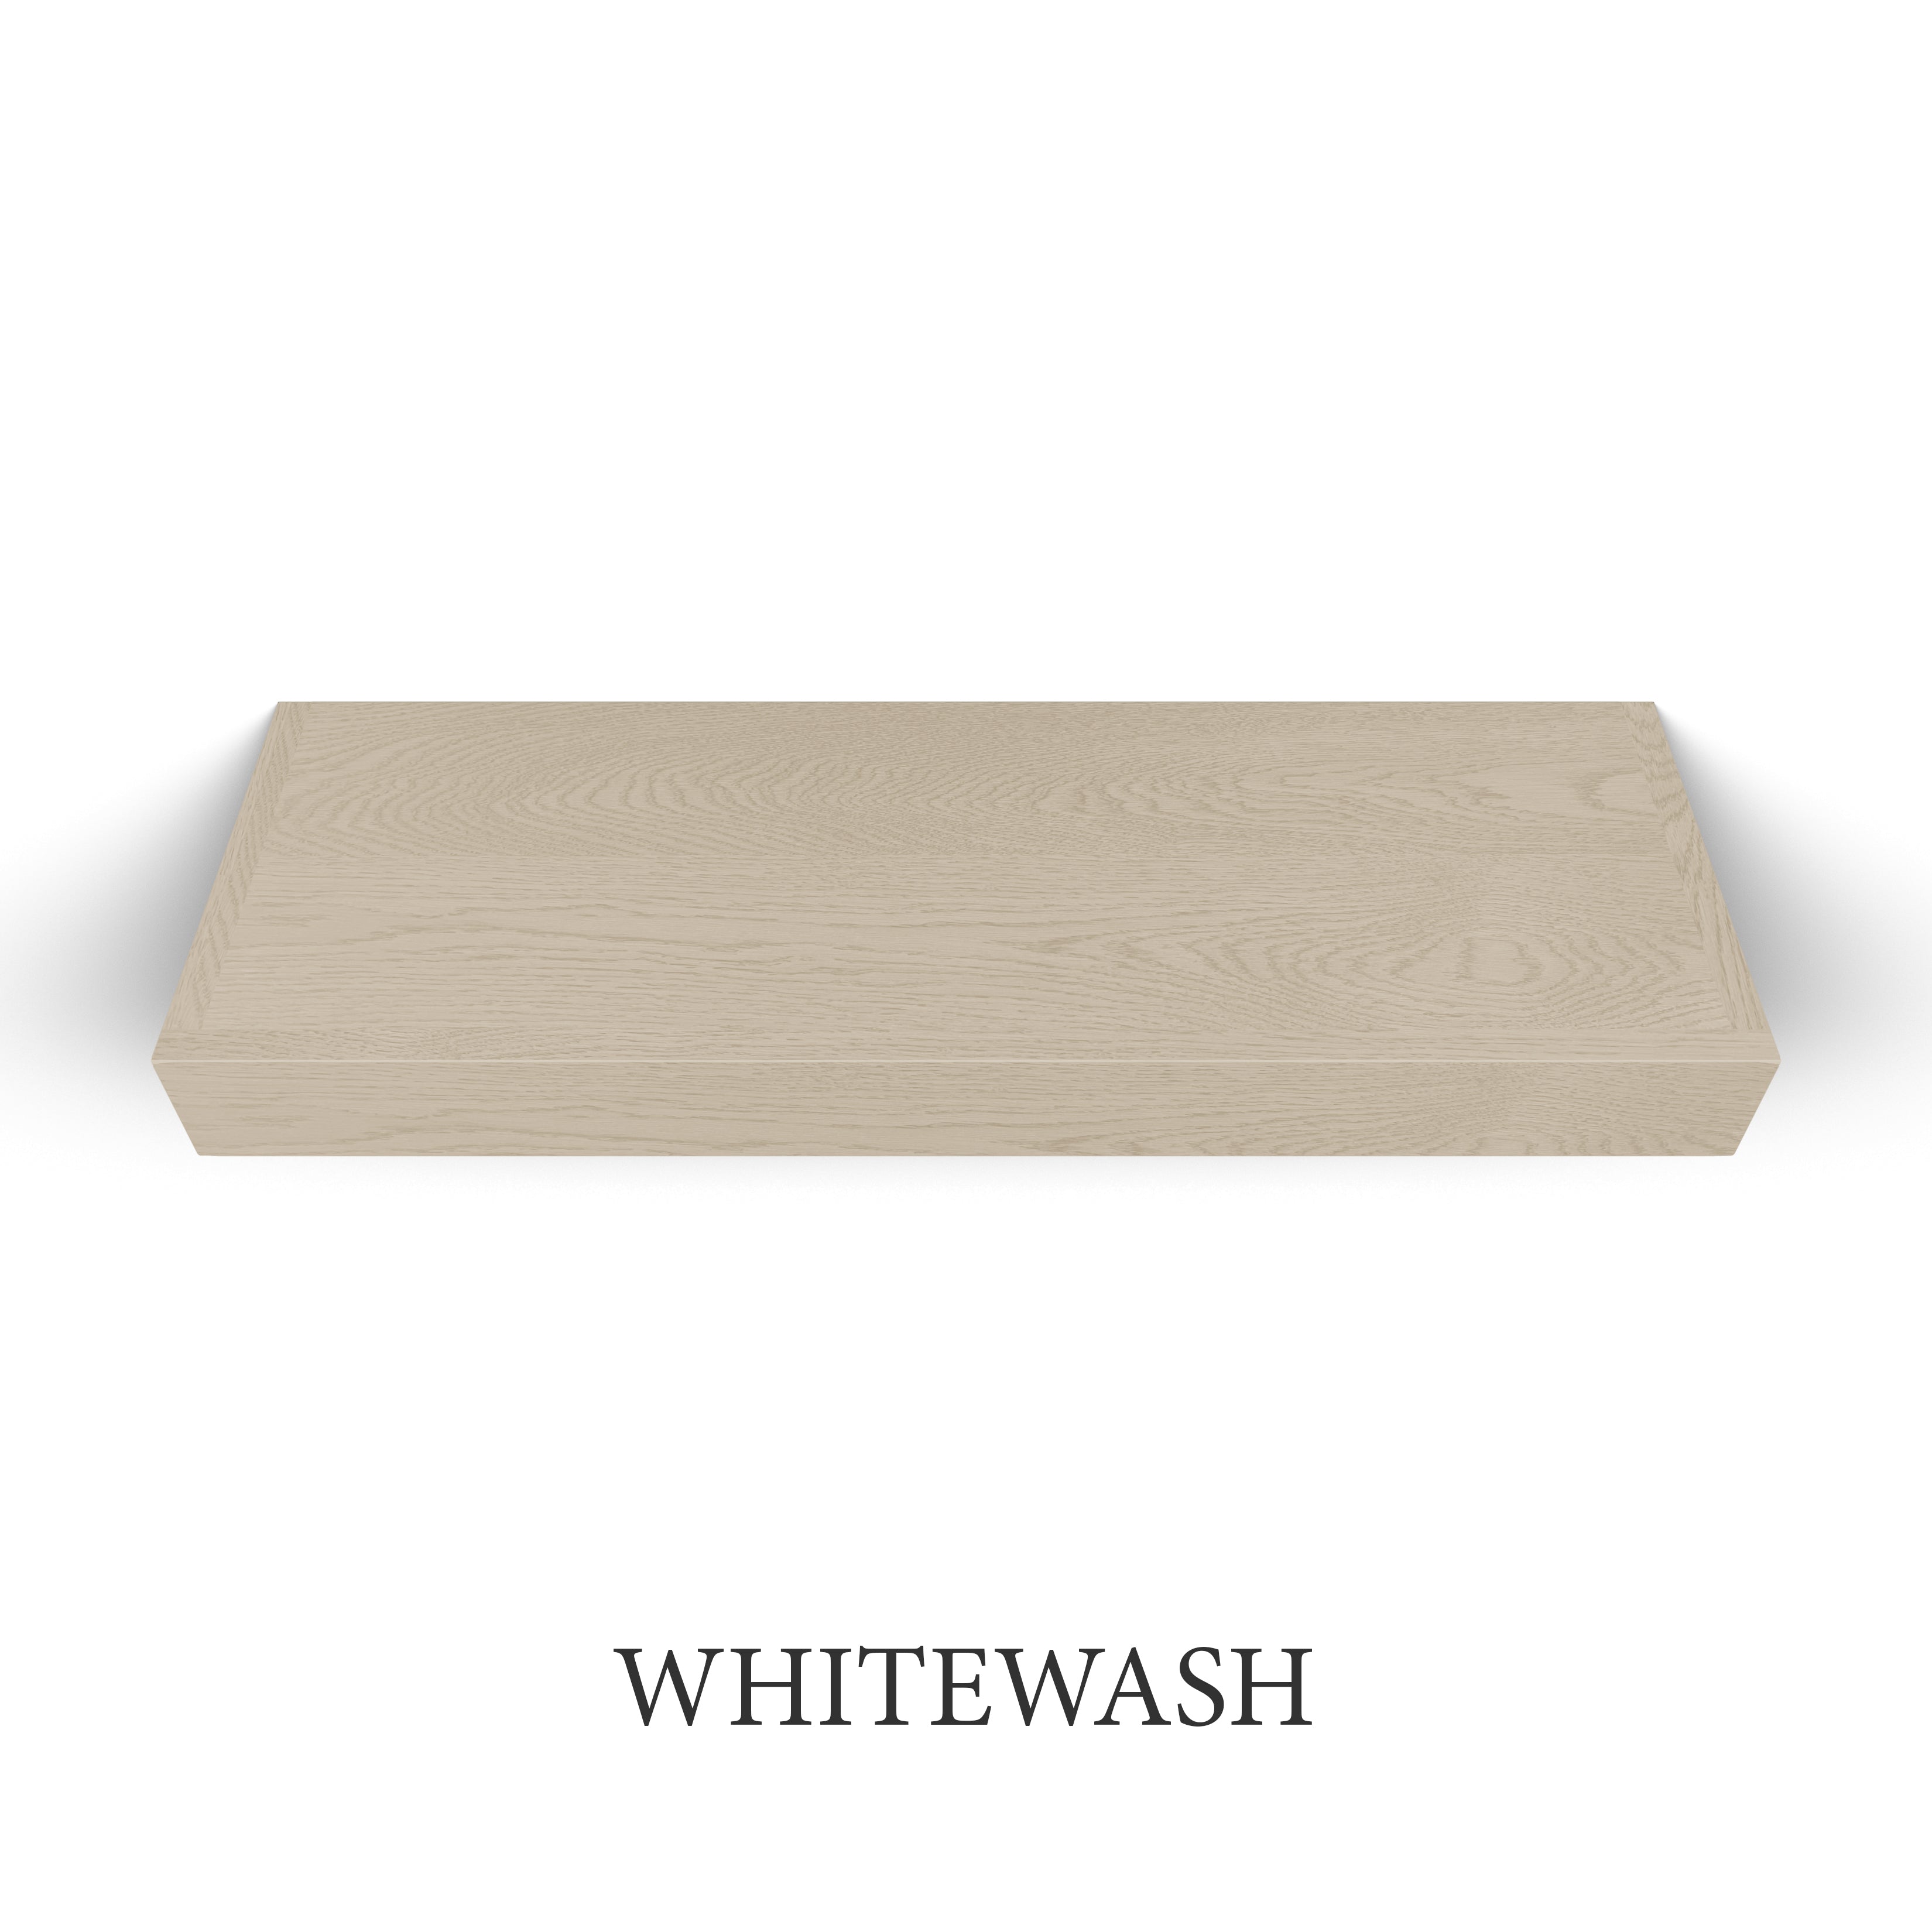 whitewash White Oak 3 Inch Thick LED Lighted Floating Shelf - Hardwired